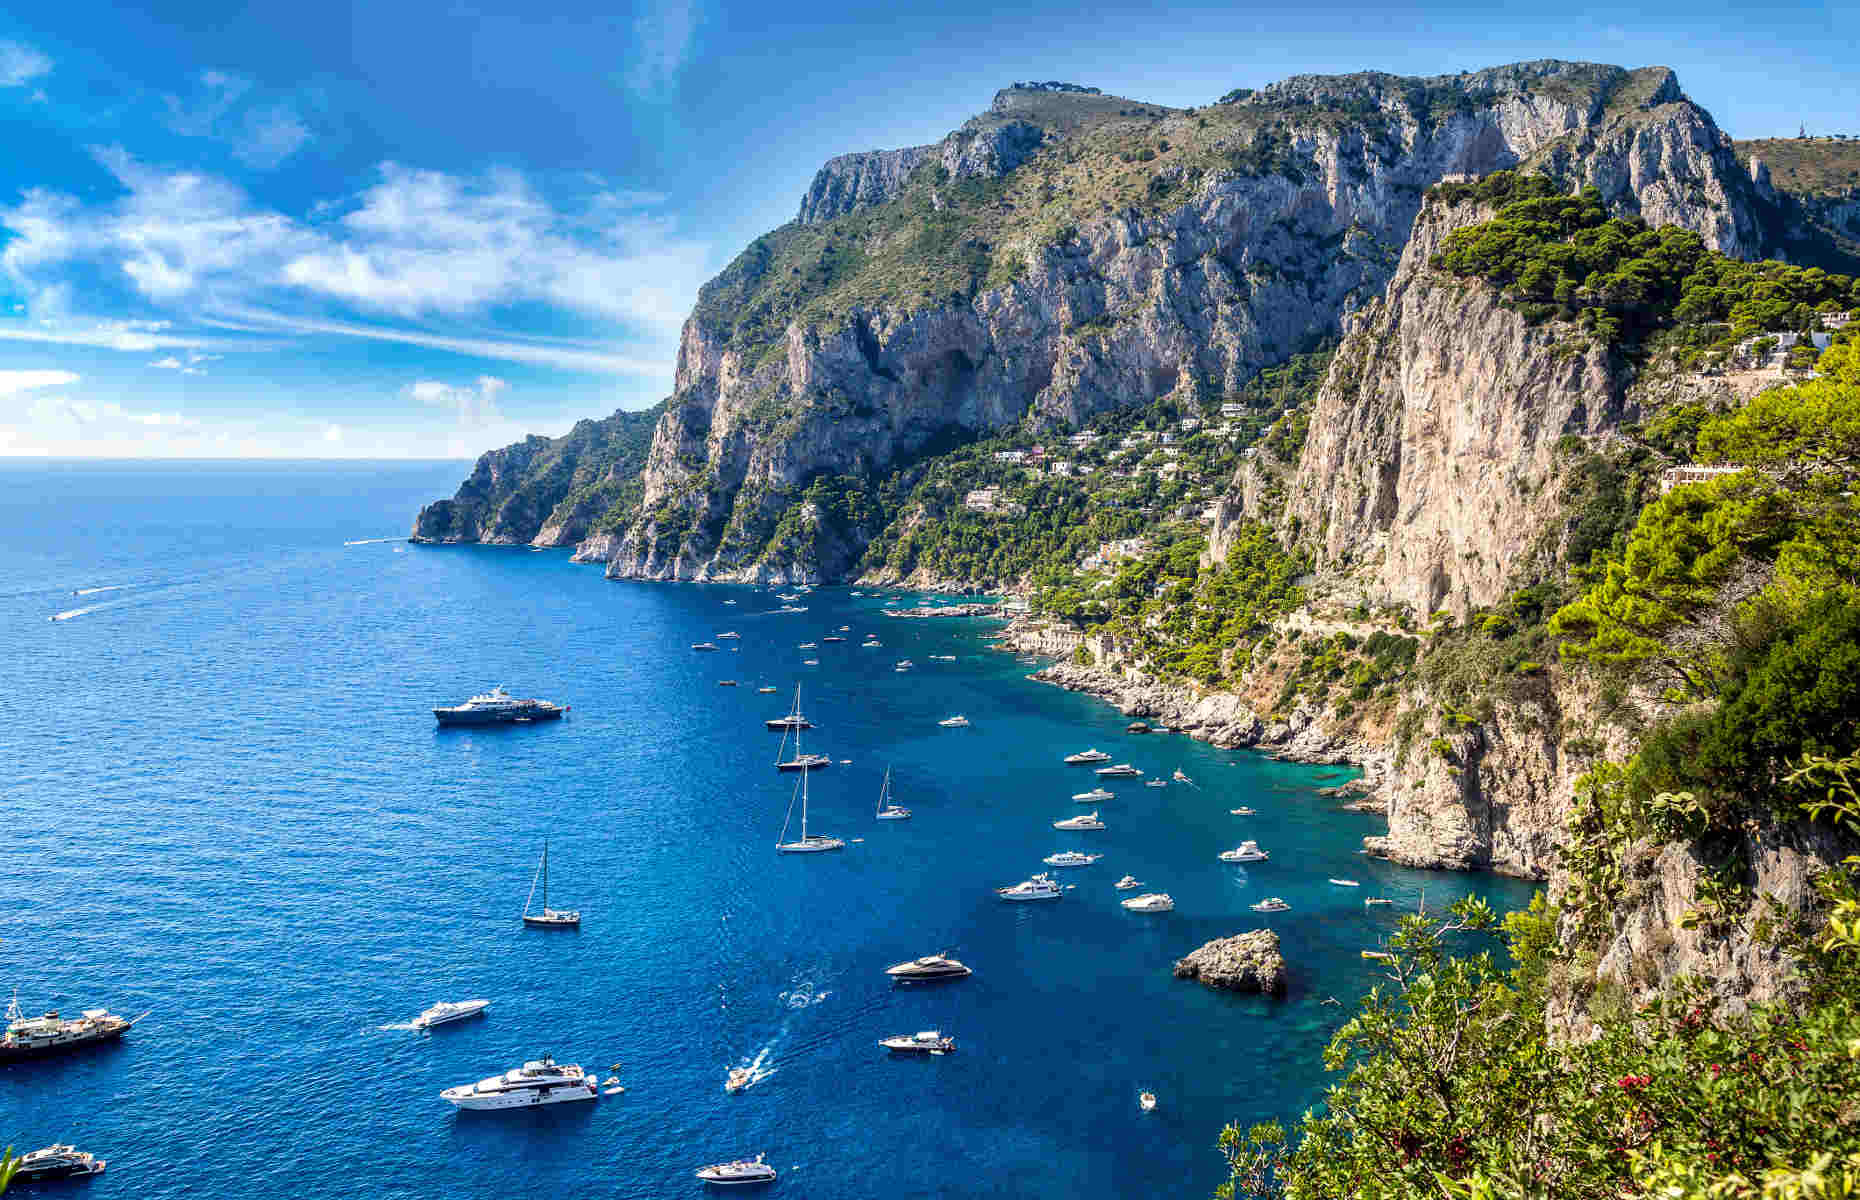 Île de Capri - Voyage Naples & côte amalfitaine, Italie